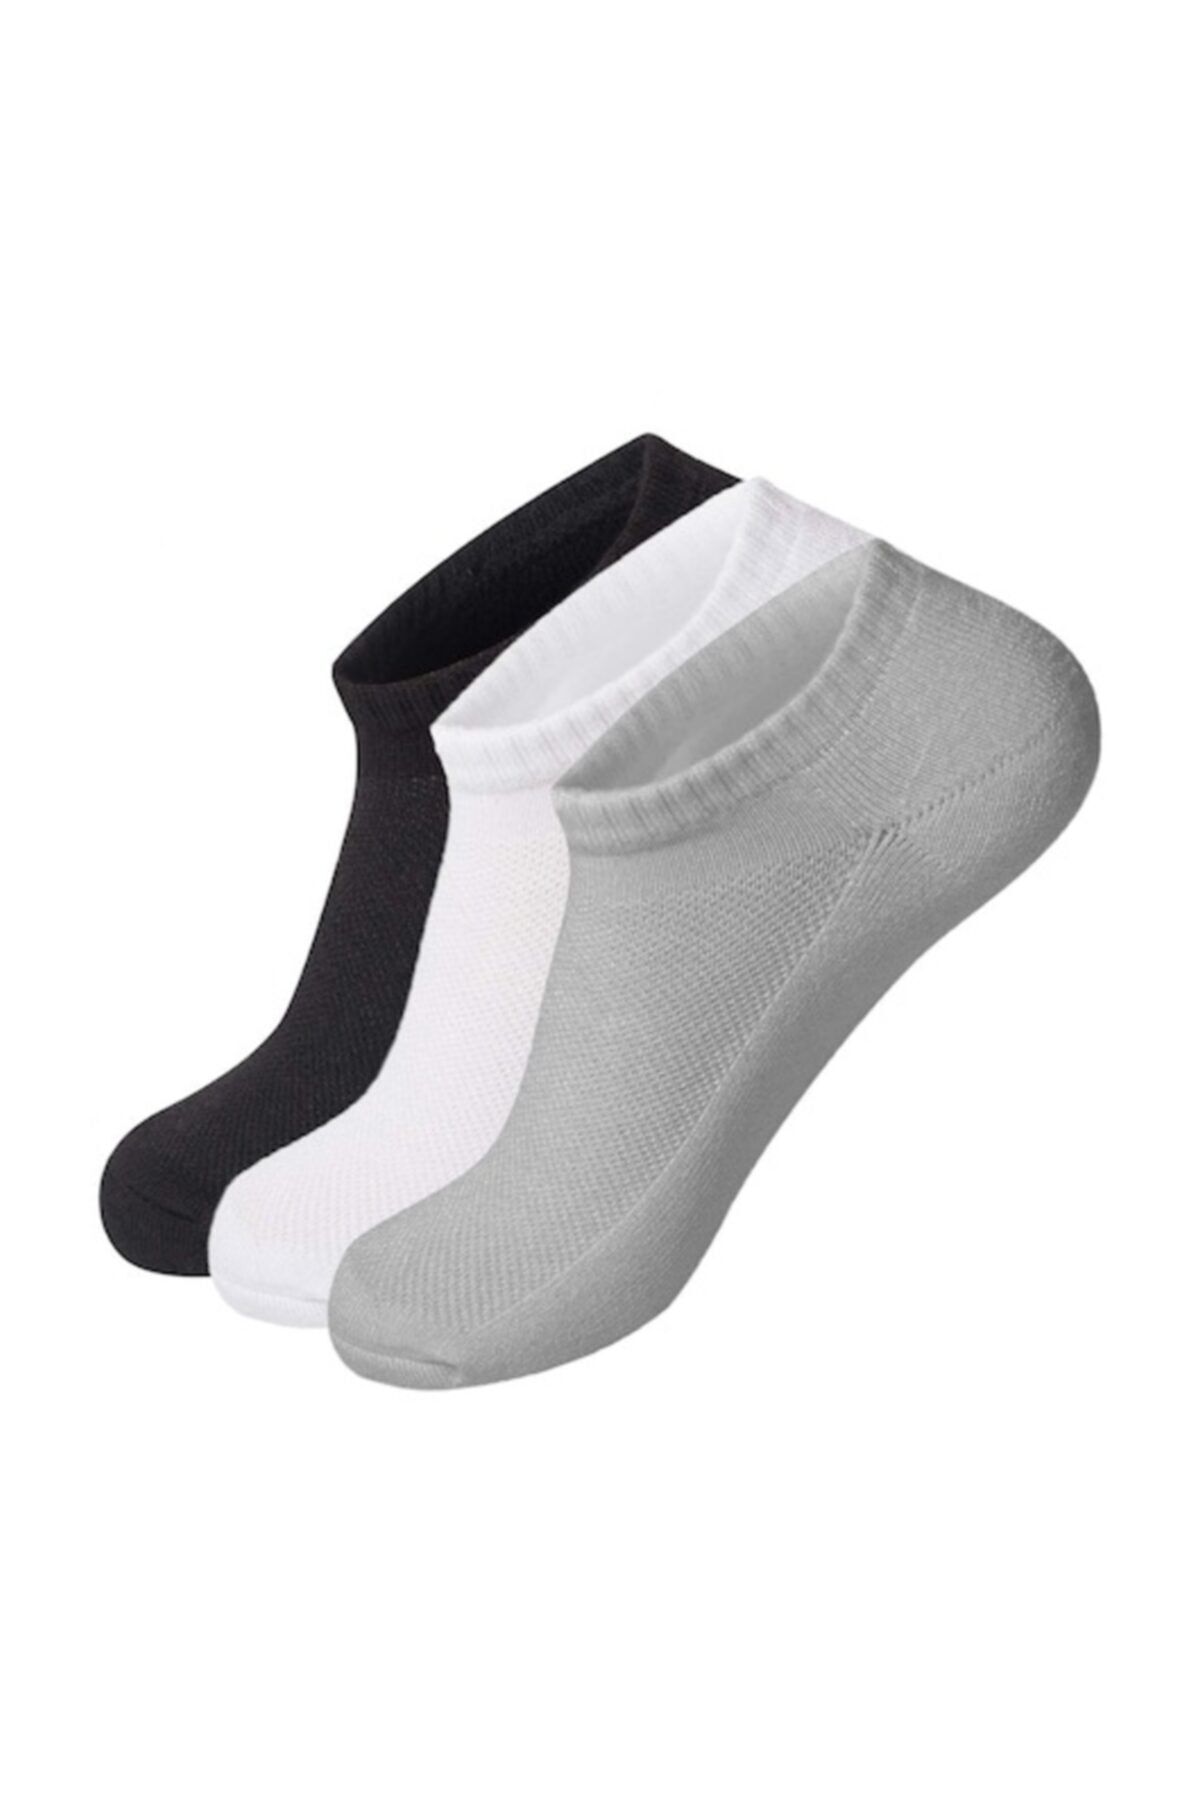 AKDEMİR 12 Çift Erkek Patik Çorap - Spor Ayakkabı Kısa Soket Çorabı